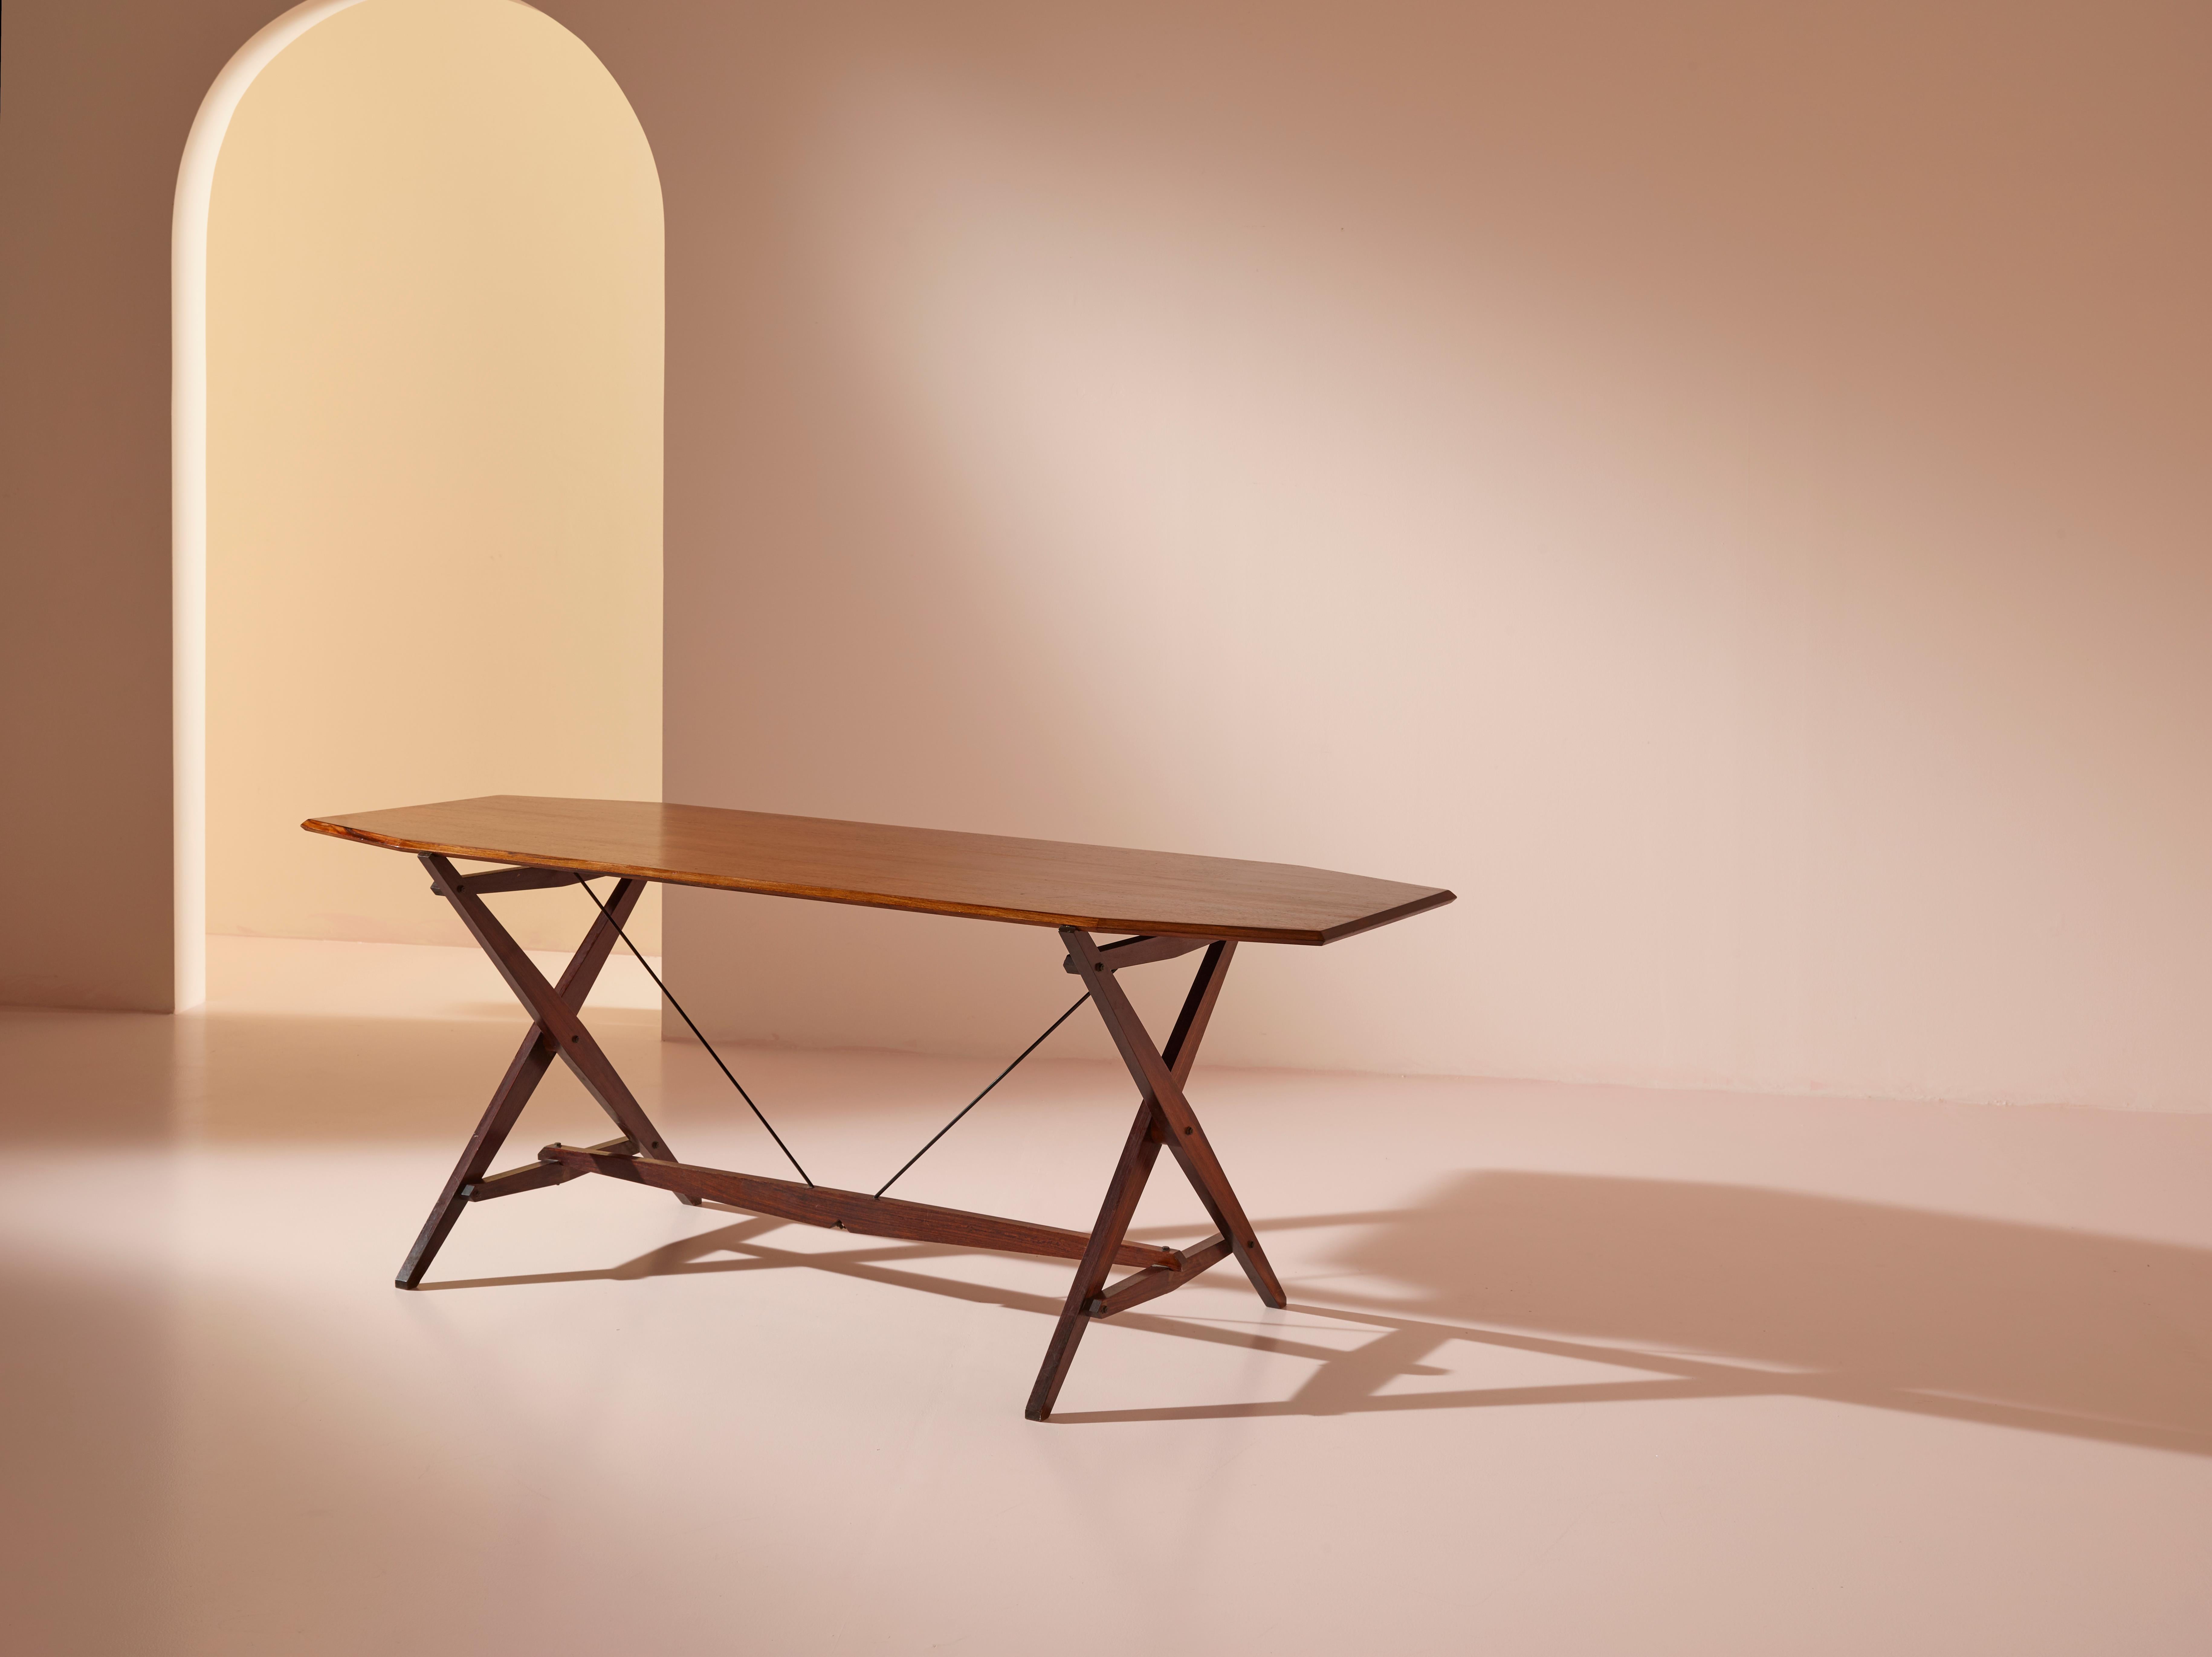 Une table de salle à manger ou un bureau Le modèle TL2 de Franco Albini, plus connu sous le nom de 